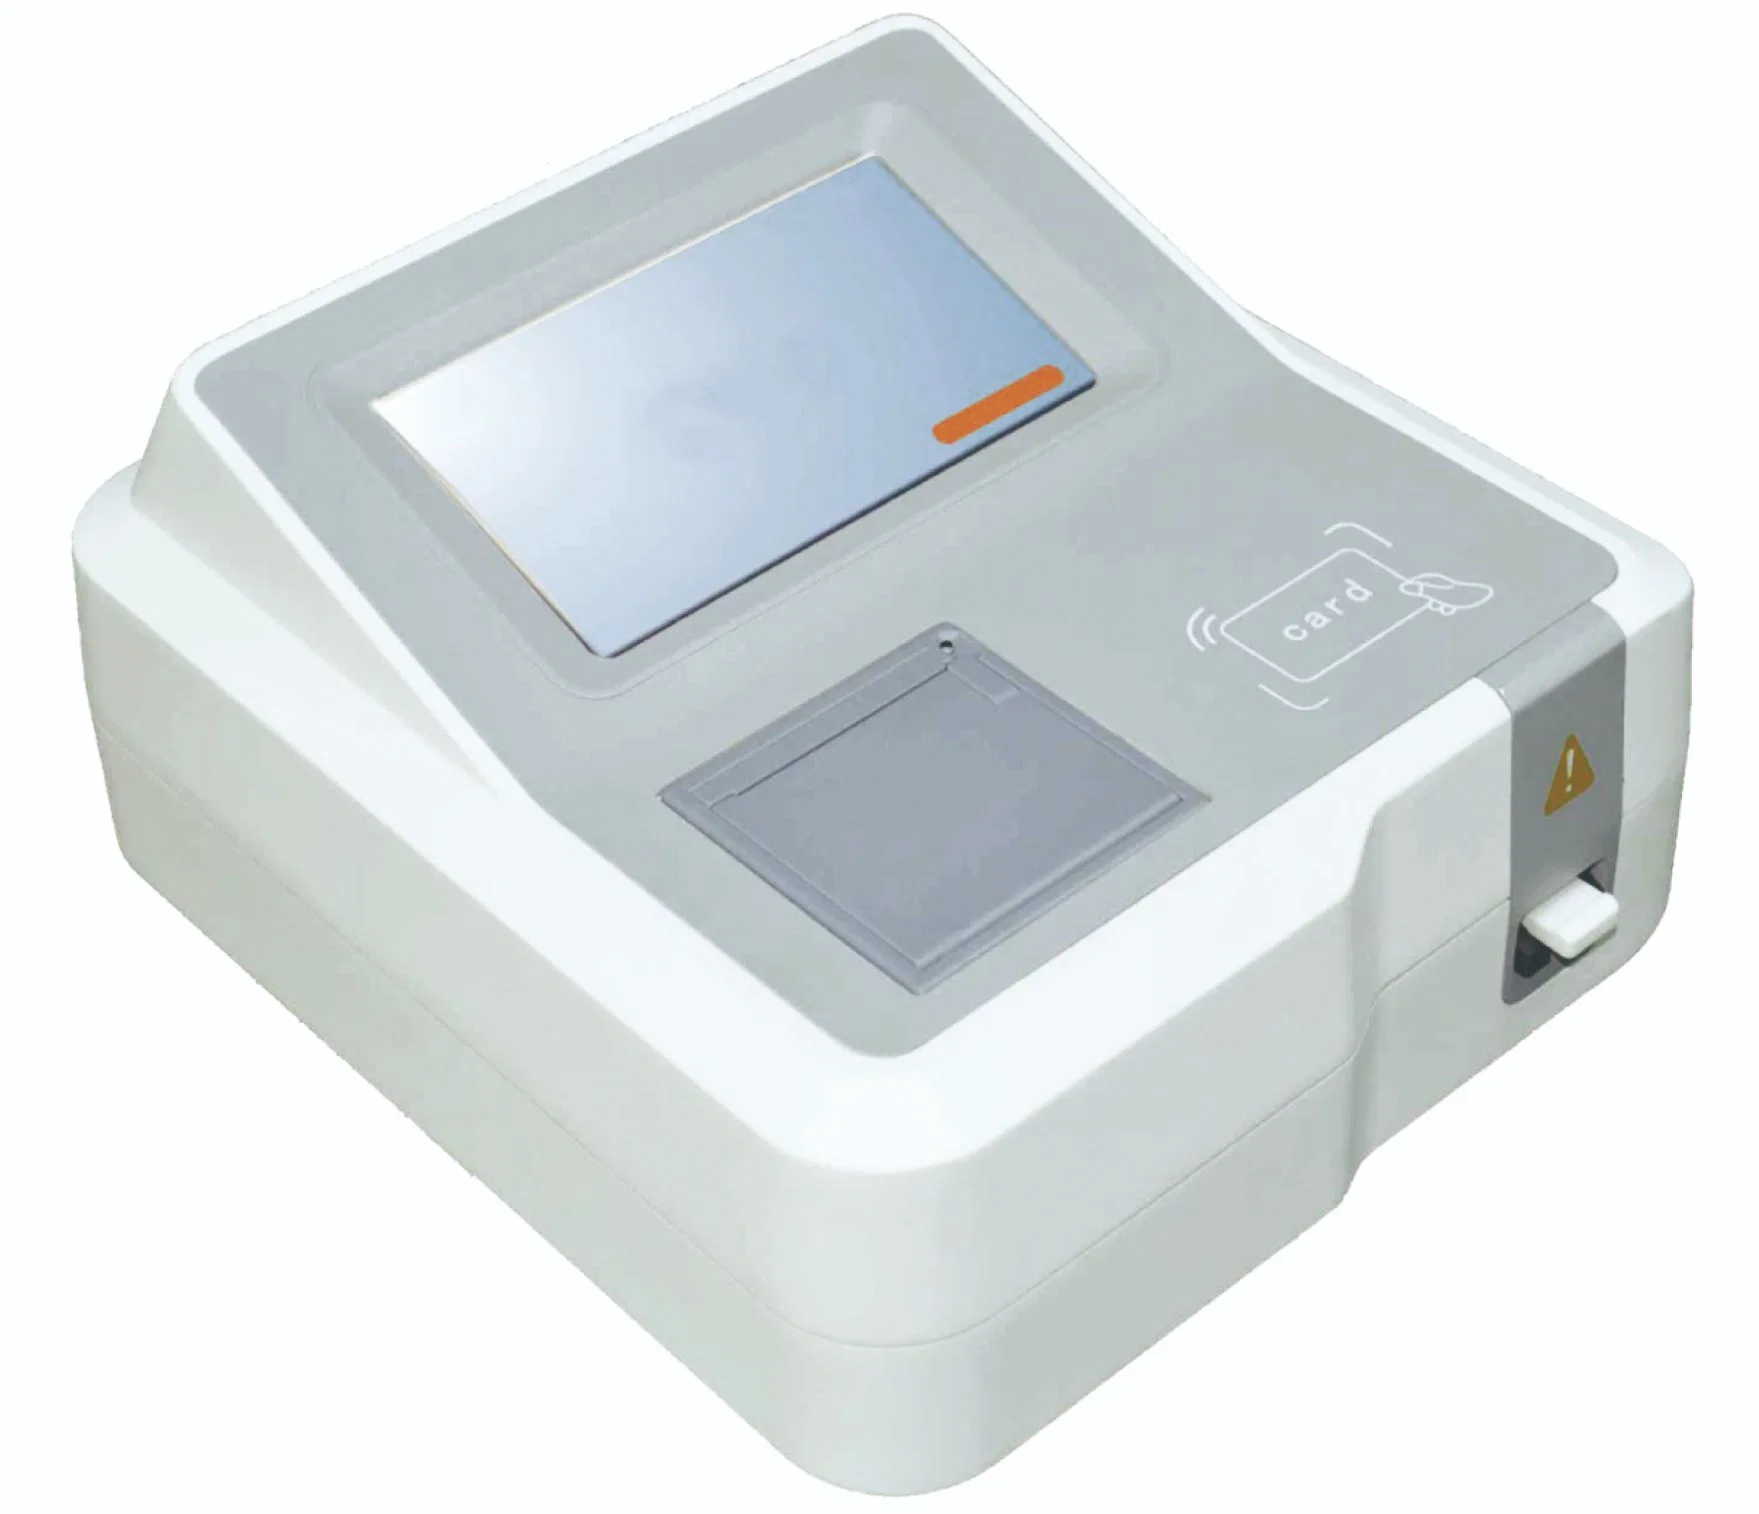 HF 201 appareils de diagnostic médical équipement spécifications OEM Test hospitalier Kit d'analyseur